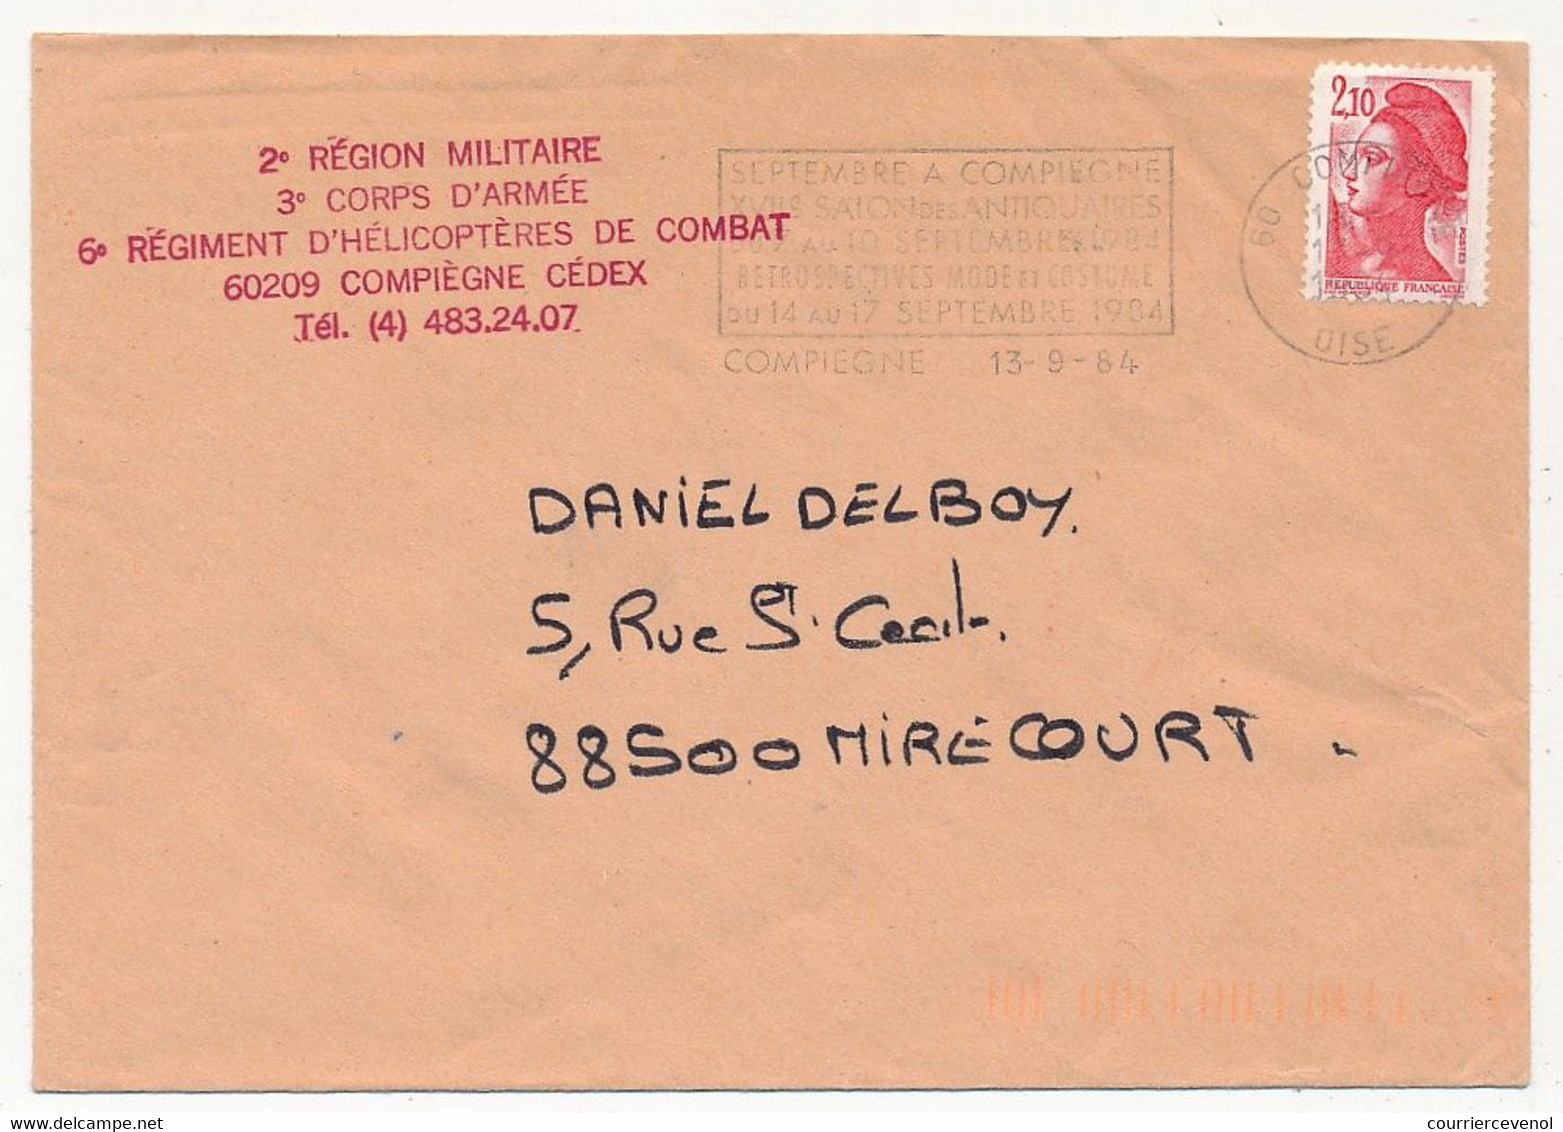 FRANCE - Env. Affr 2,10 Liberté, Compiègne 1984 - Cachet Rouge 6eme Régiment D'Hélicoptères De Combat - Hélicoptères